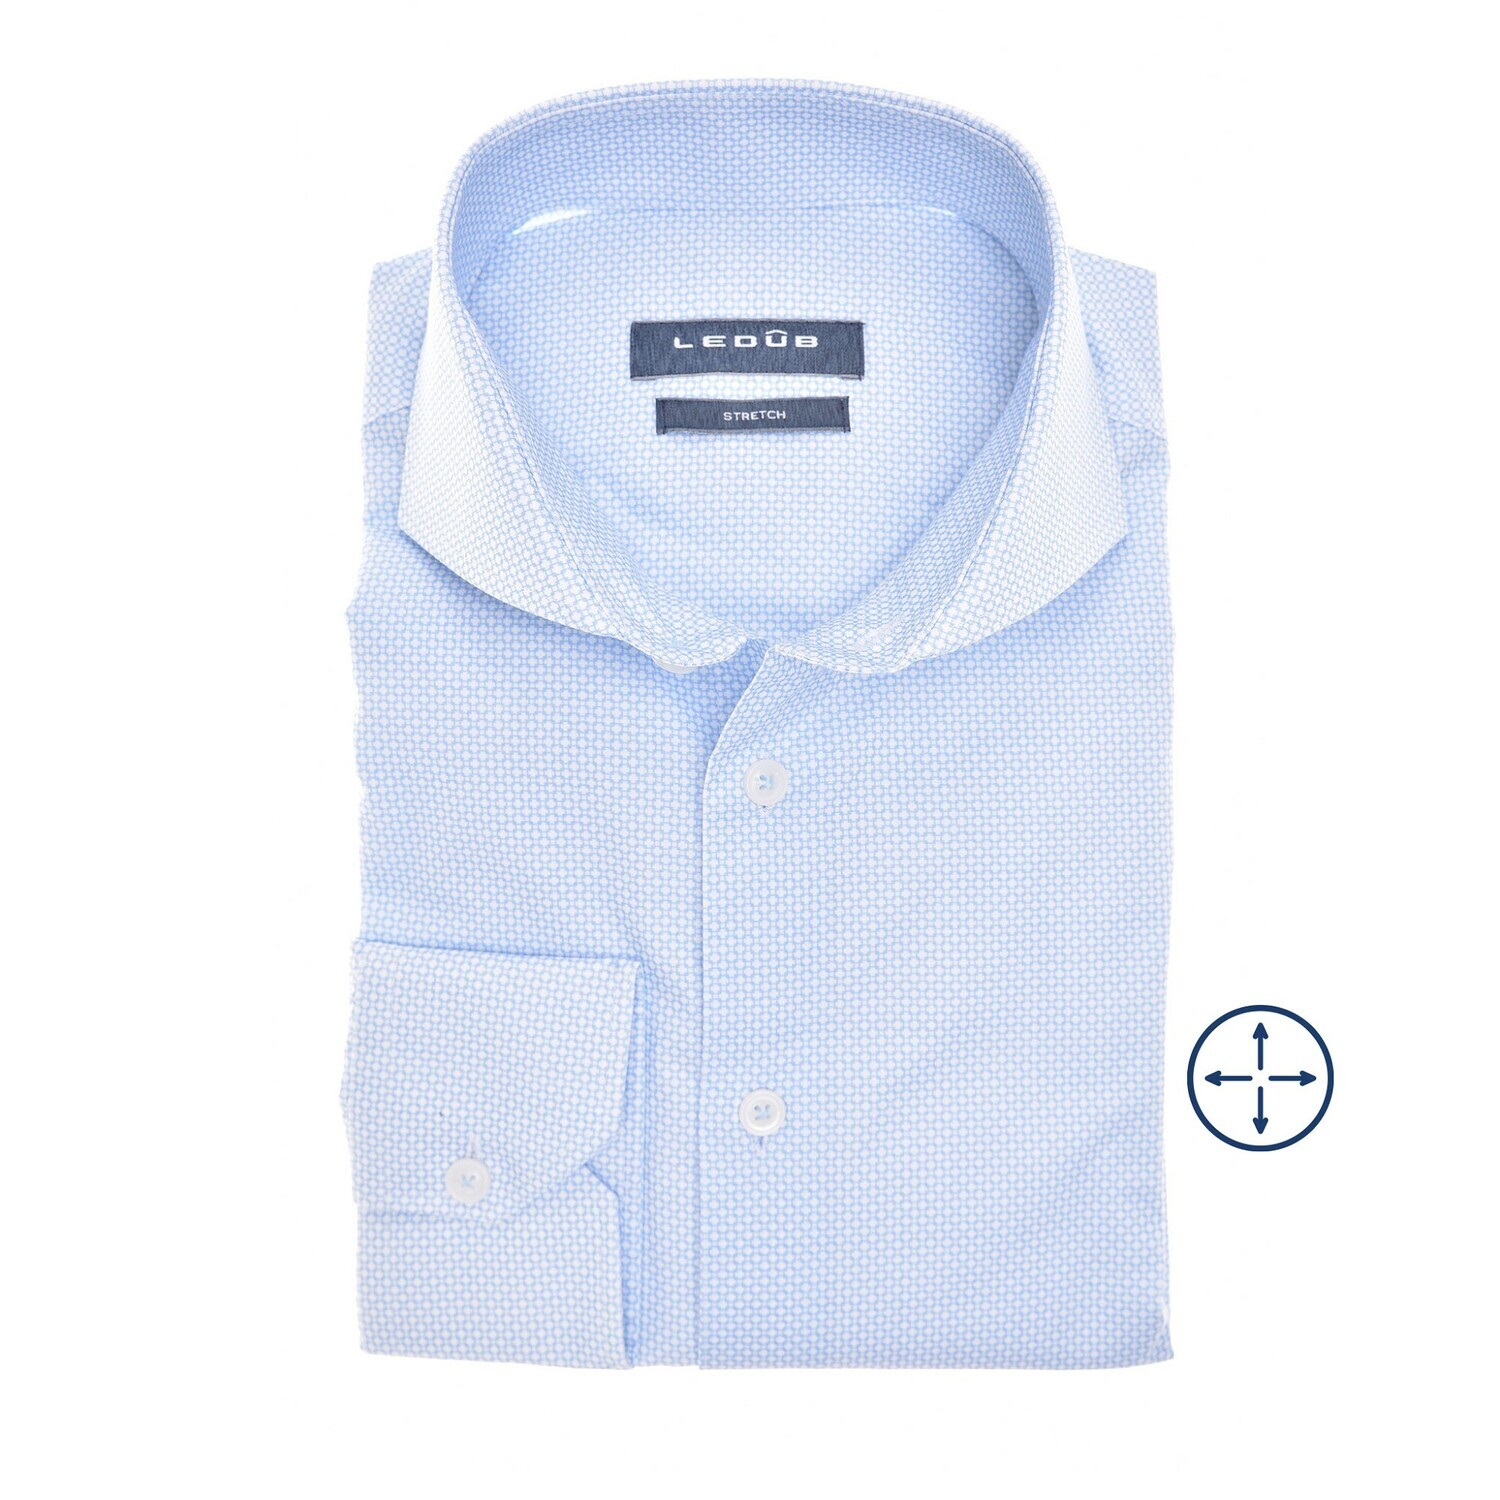 Ledub Shirts Plain:Overhemd Blauw 0142281